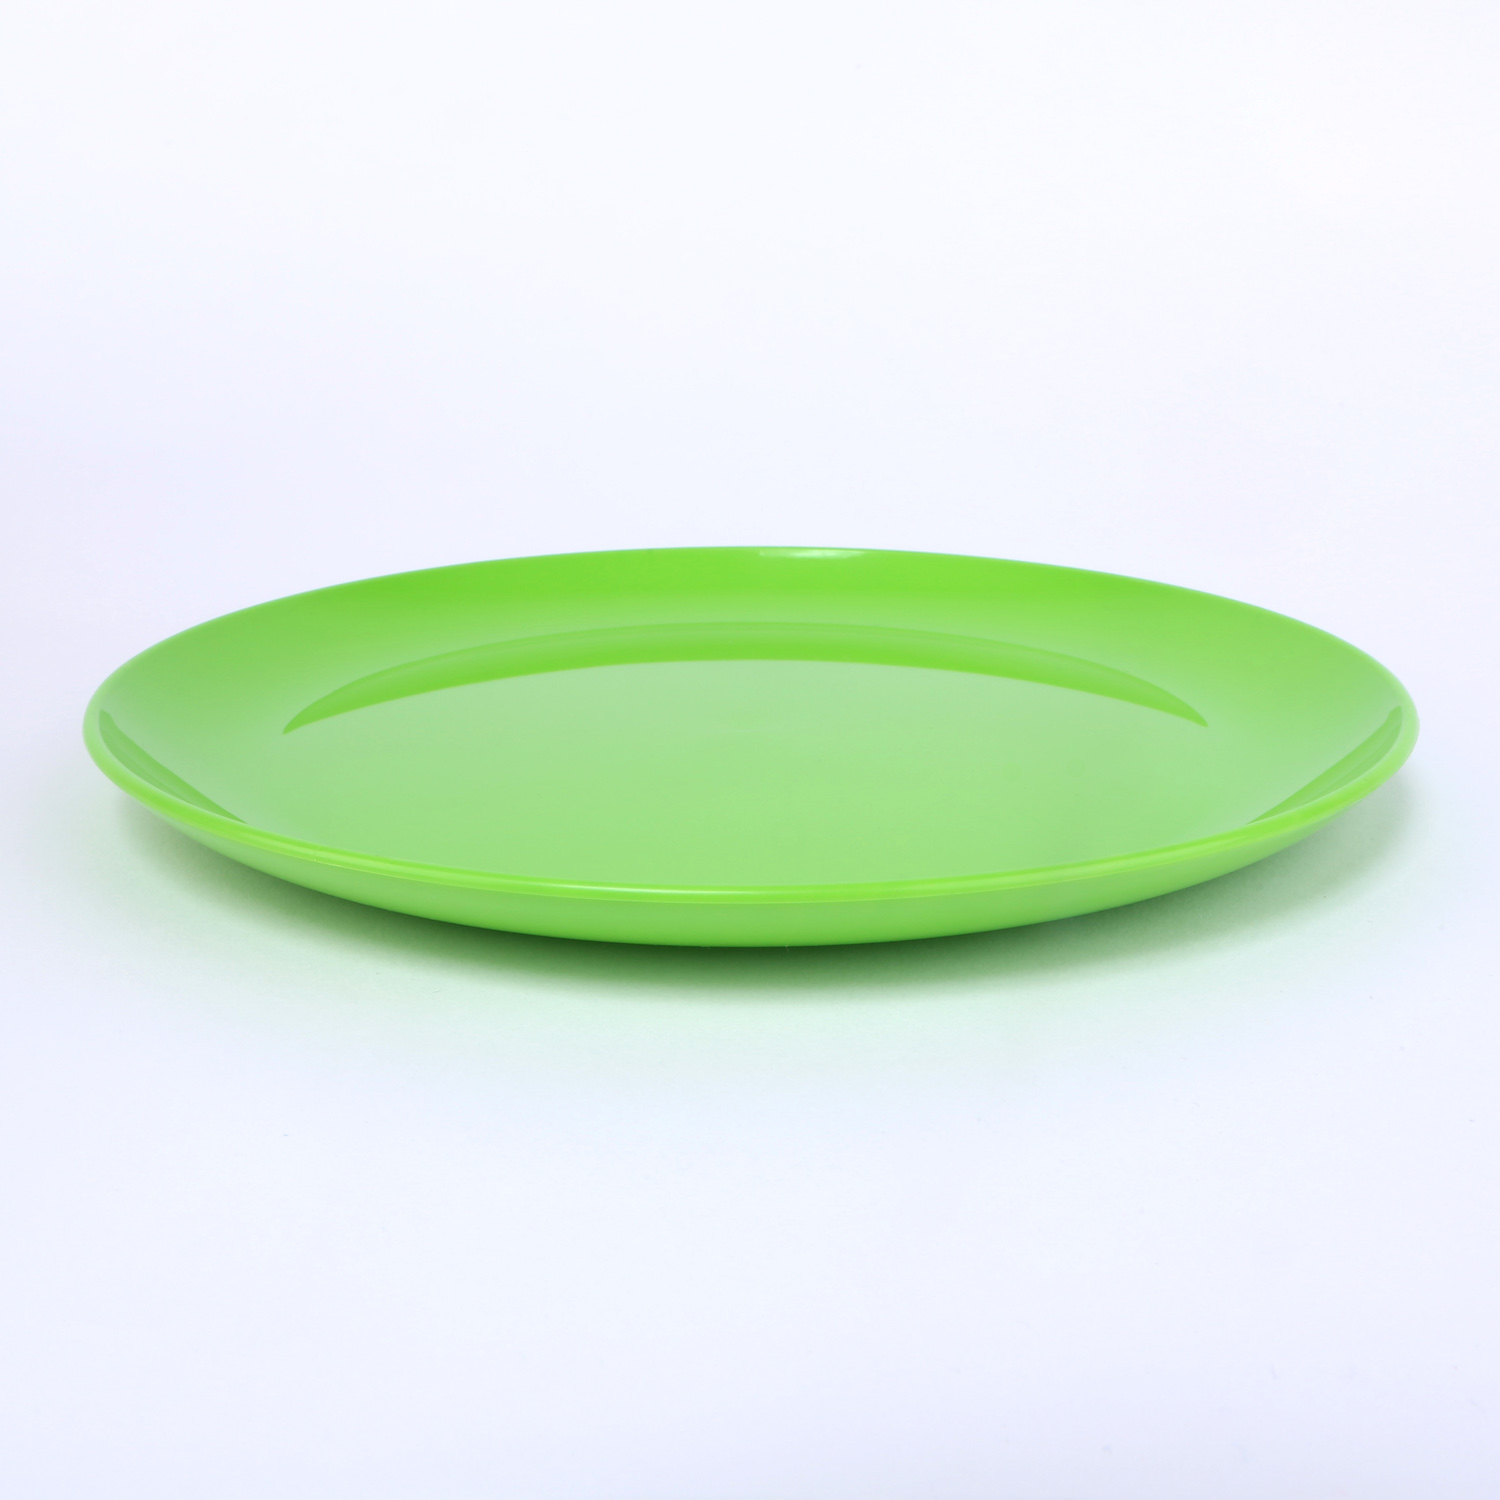 vaLon Zephyr Speiseteller 24 cm aus schadstofffreiem Kunststoff in der Farbe grasgrün.